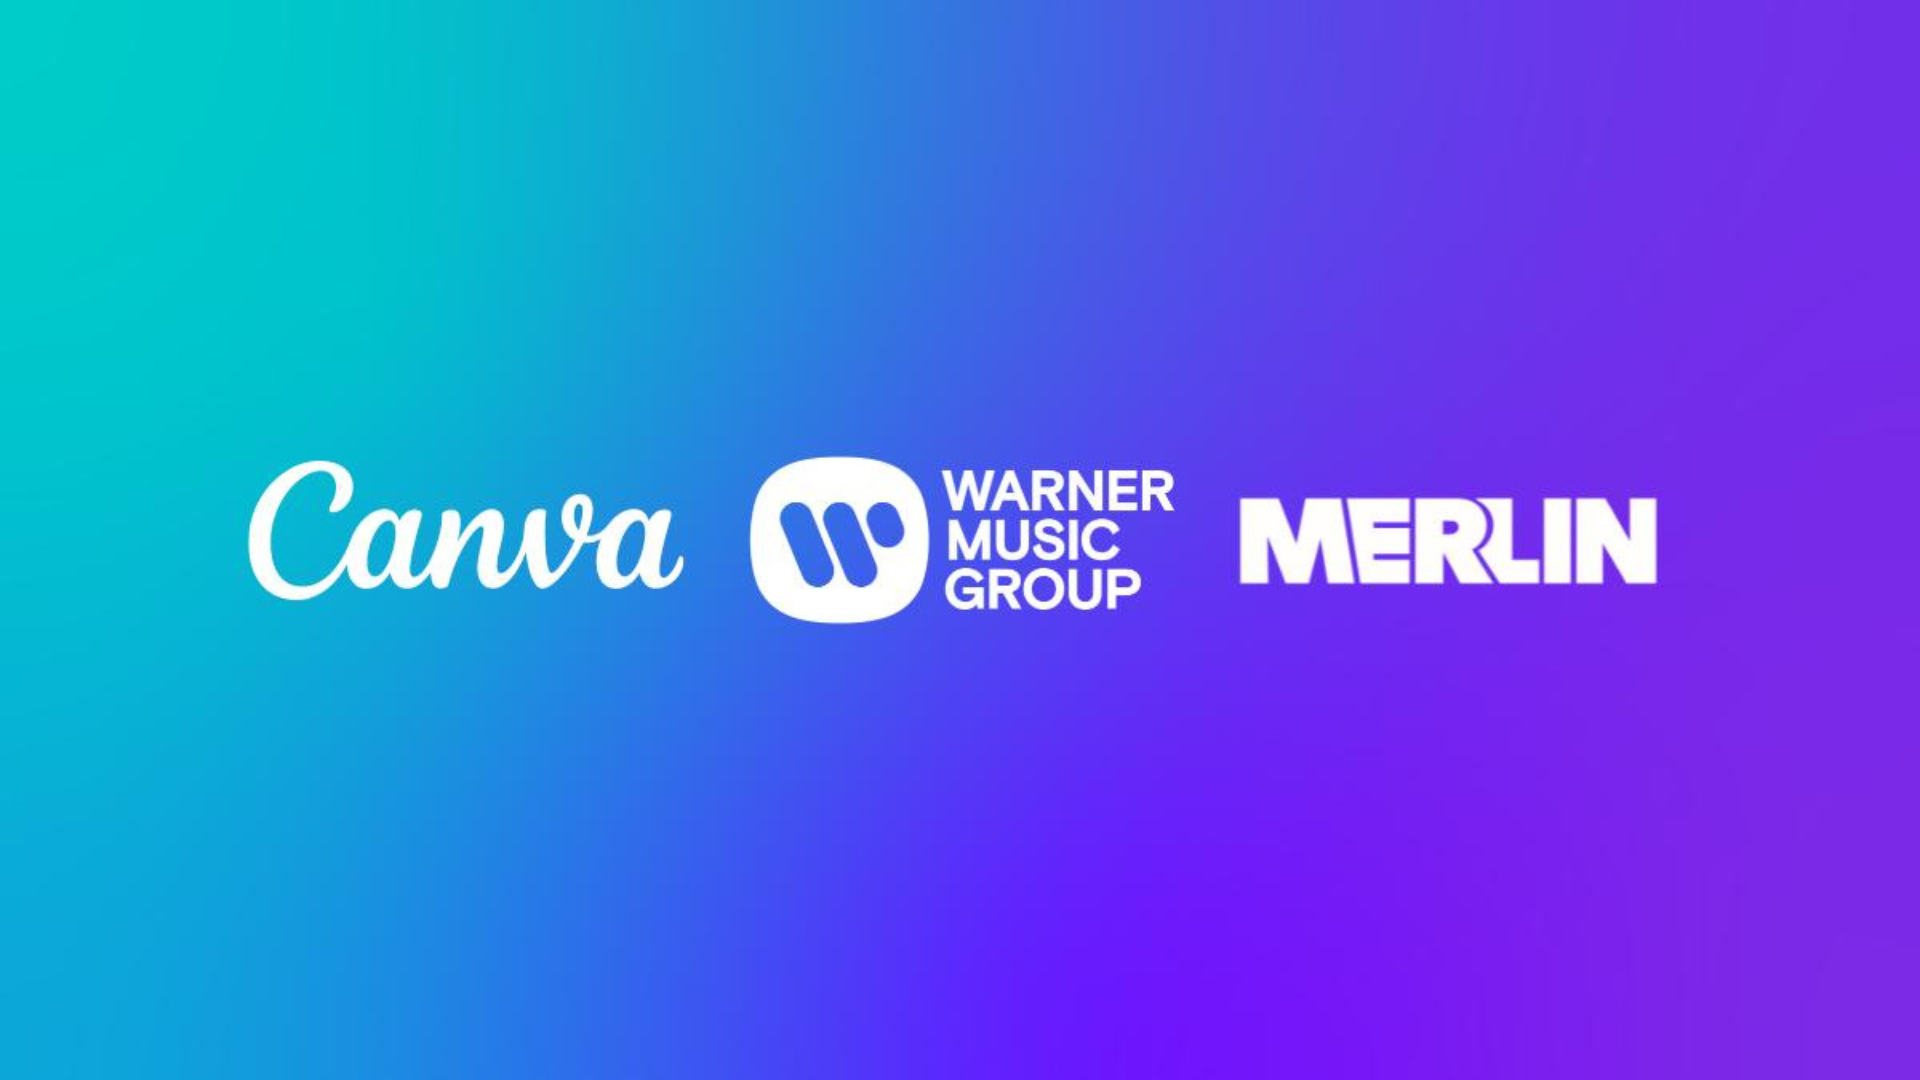 Éxitos musicales en Canva: La plataforma líder en comunicación visual se une a Warner Music y Merlin